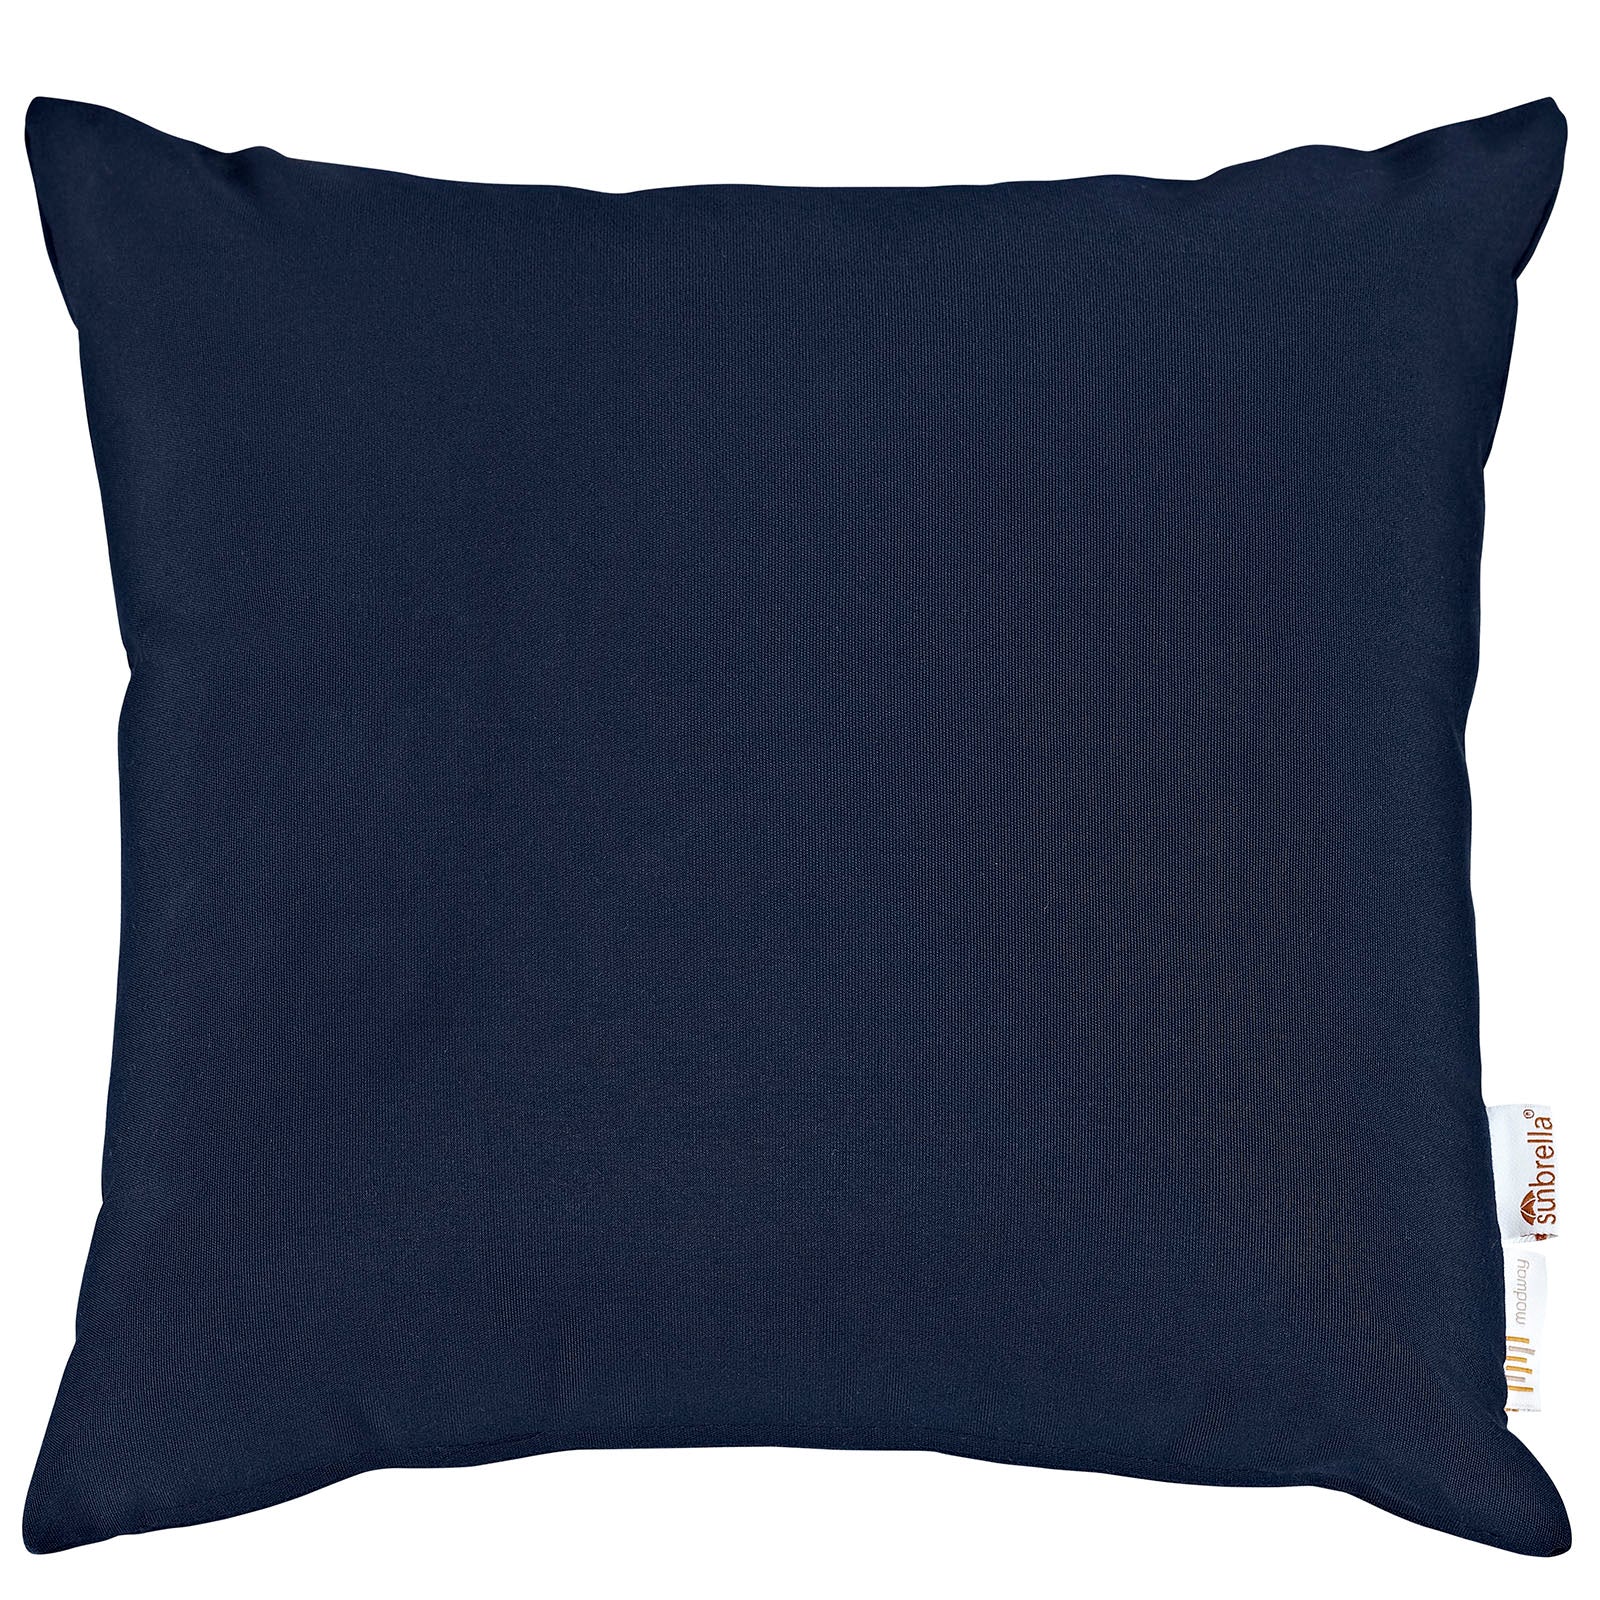 Summon 2 Piece Outdoor Patio Sunbrella® Pillow Set